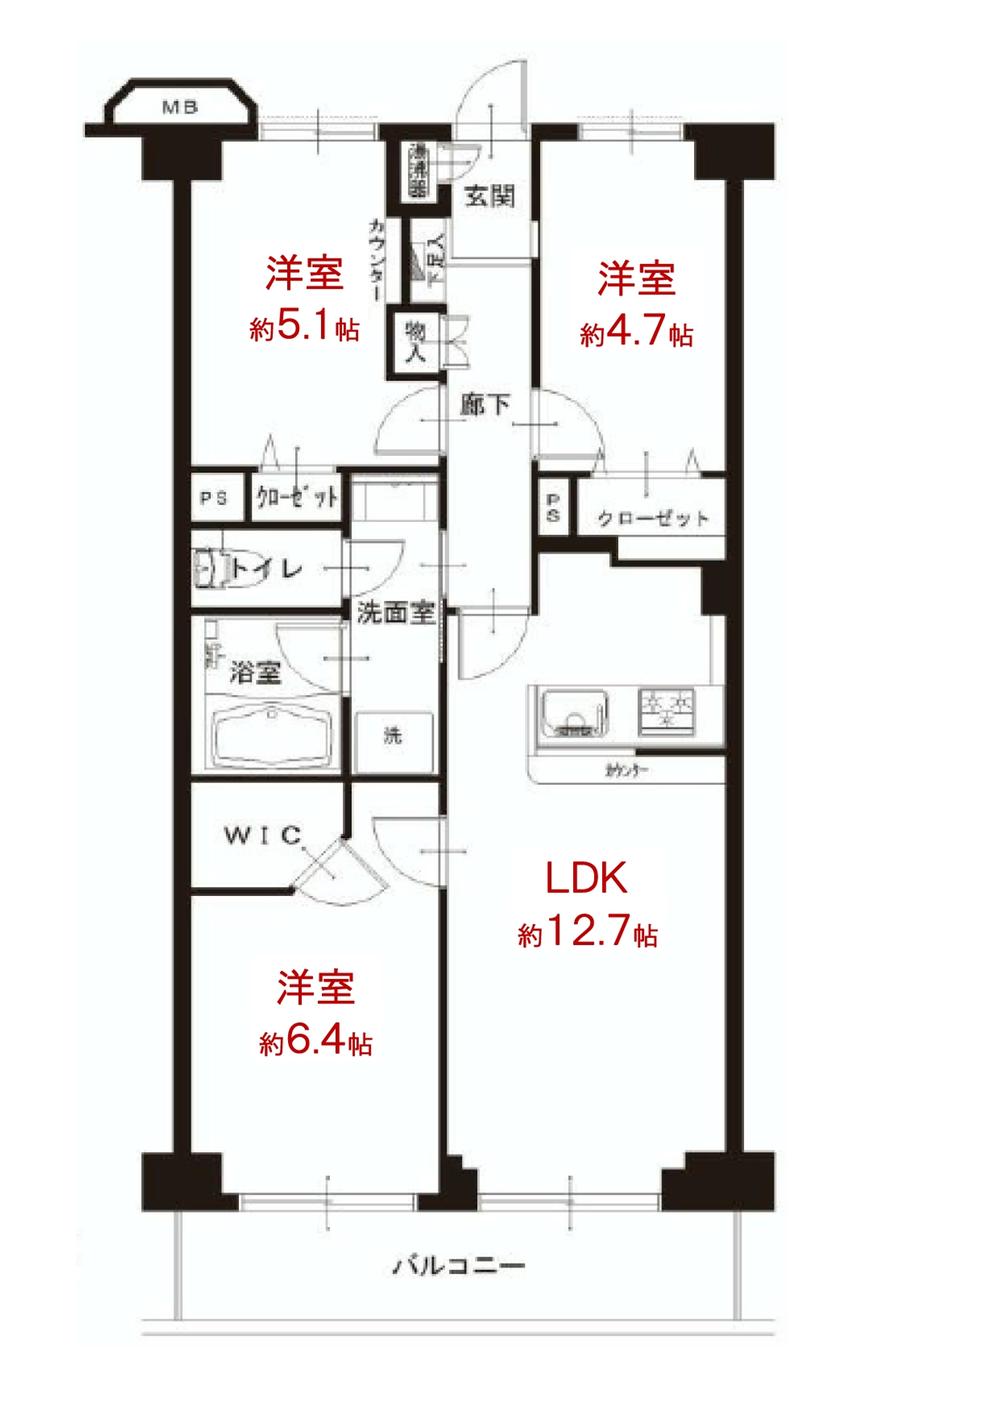 Floor plan. 3LDK + S (storeroom), Price 29,300,000 yen, Footprint 66.5 sq m , Balcony area 7.54 sq m